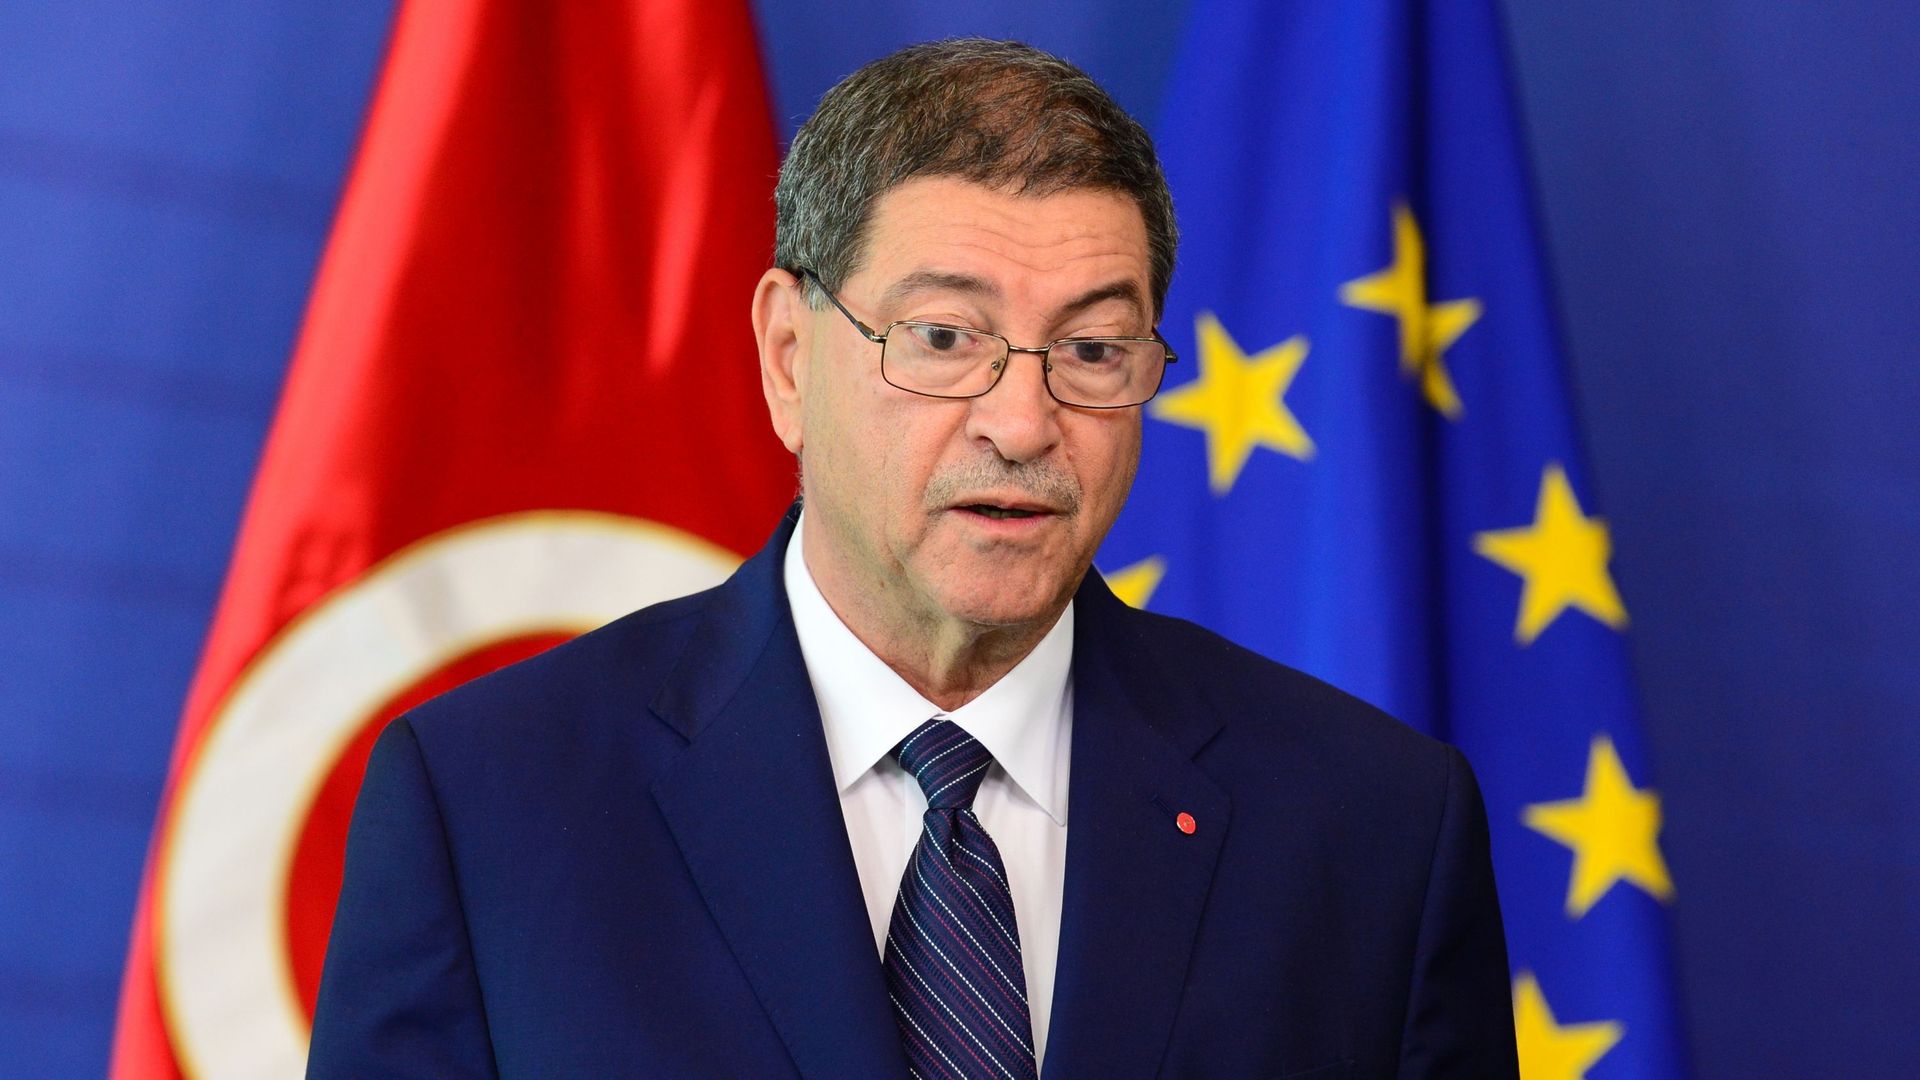 Le Premier ministre tunisien a rencontré les autorités européennes ce jeudi